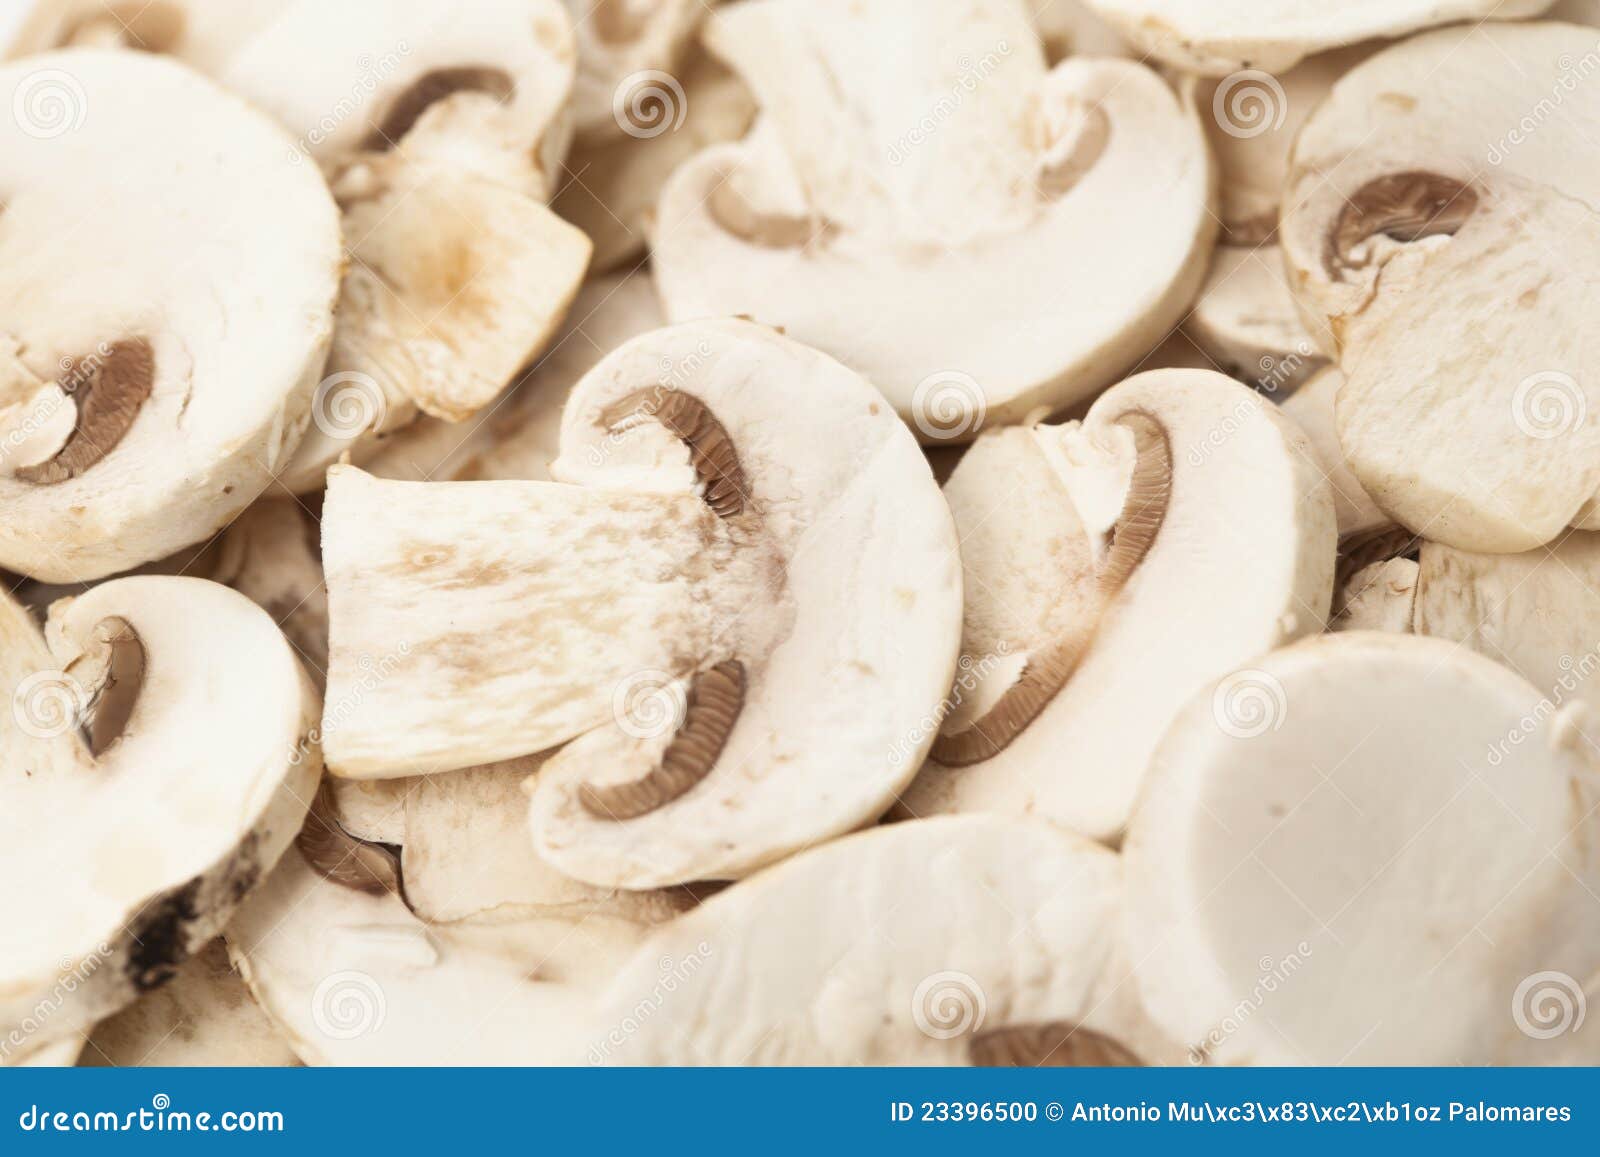 新鲜的蘑菇蘑菇被切 库存照片. 图片 包括有 新鲜, 自然, 切碎, 健康, 正餐, 餐馆, 宏指令, 美食 - 31340332